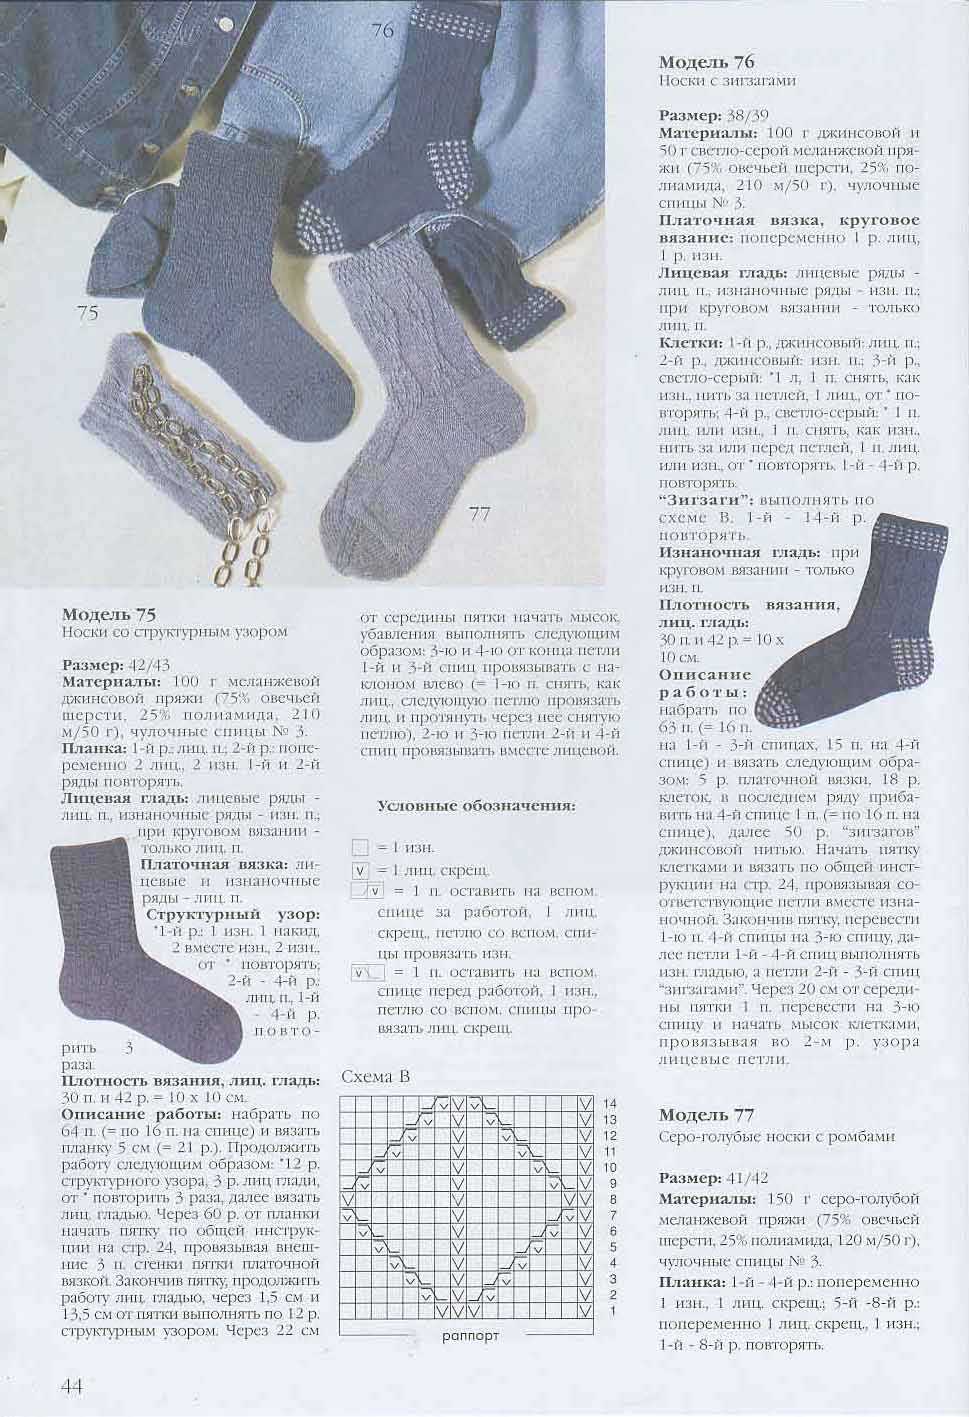 Как заработать на вязании носков: какие носки вязать, где продавать art-textil.ru